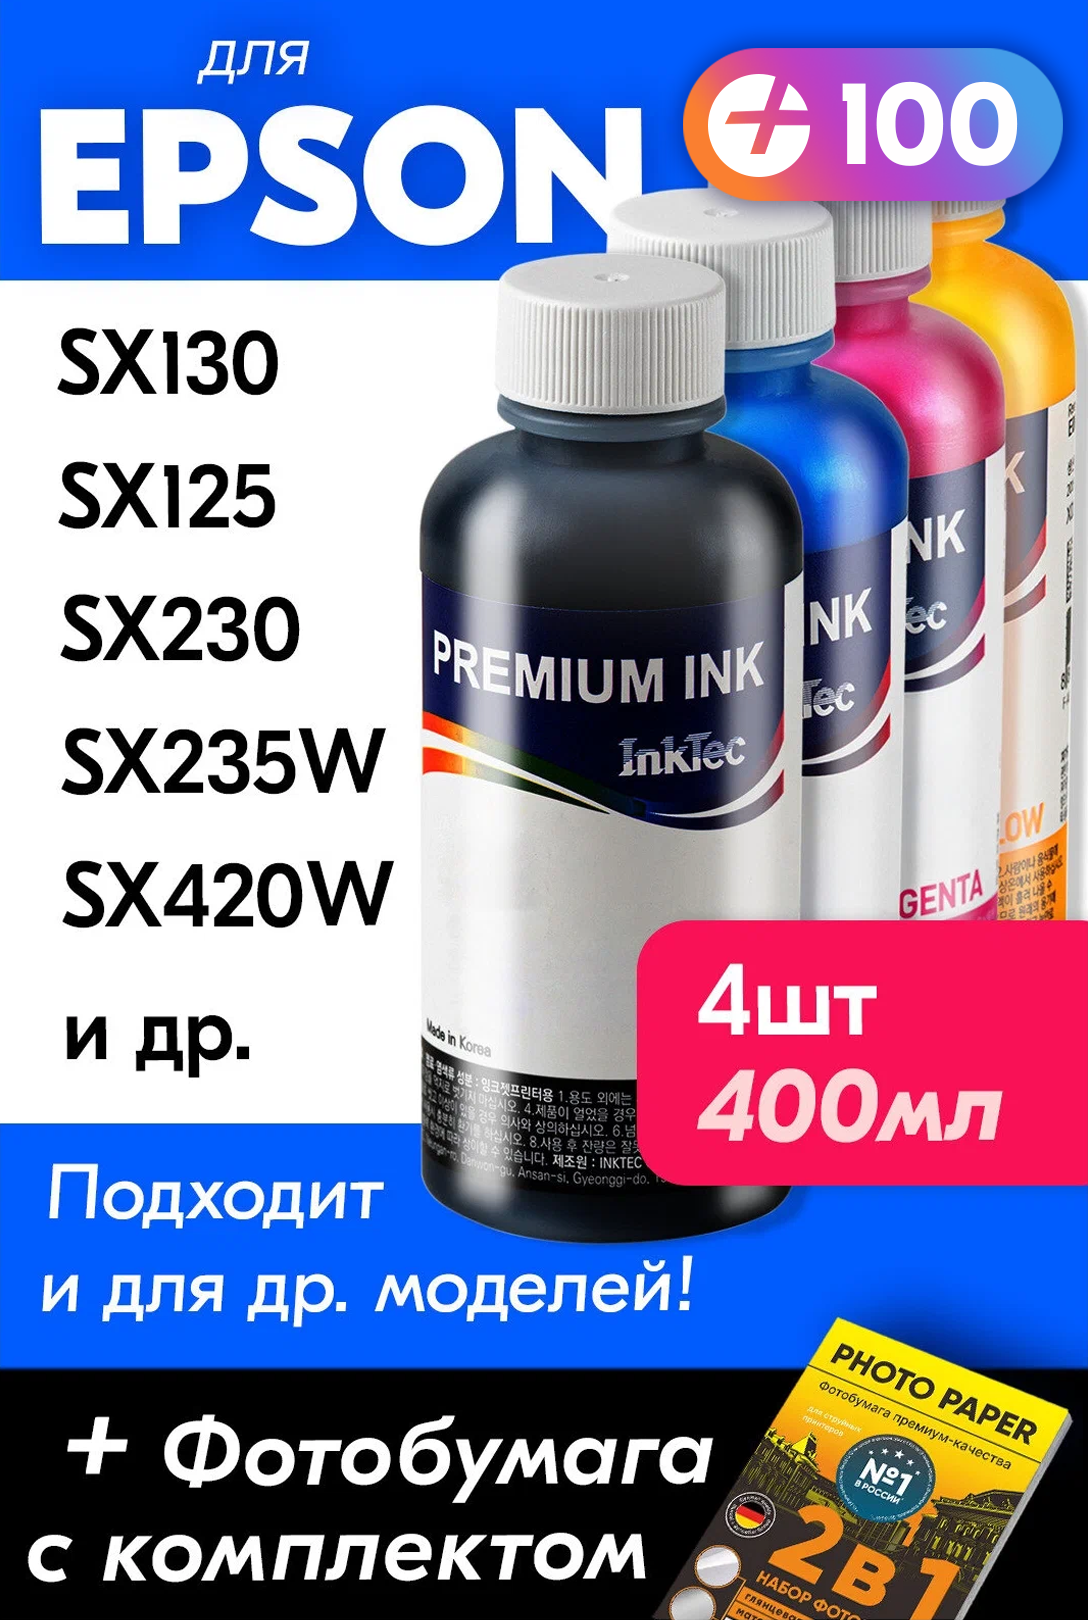 Чернила для принтера Epson Stylus SX130, SX125, SX230, SX235W, SX420W и др, краска на принтер для заправки картриджей, Черный, Цветные, 4 шт.